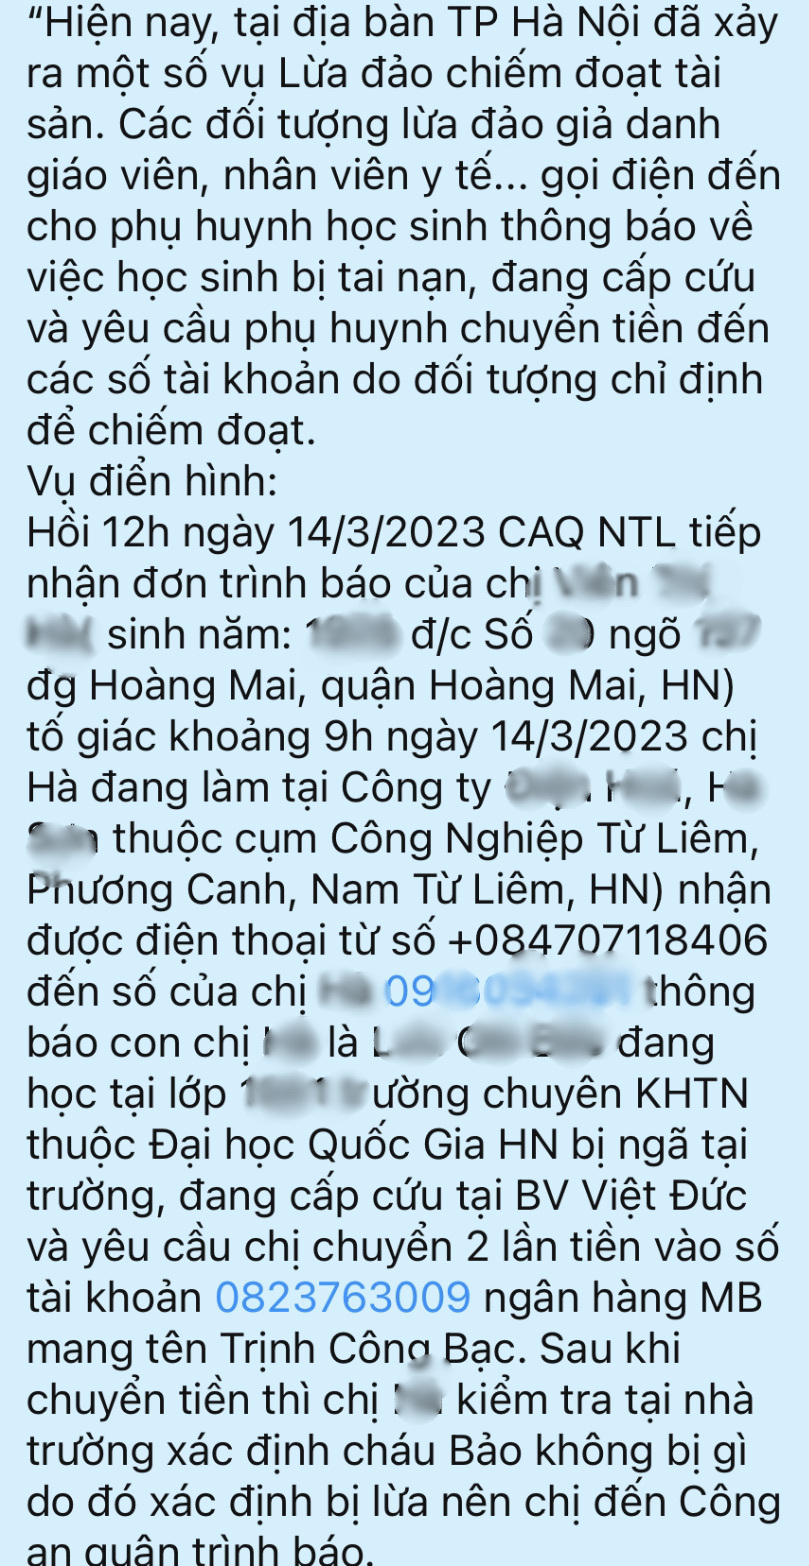 Thông báo gửi phụ huynh trường THCS và THPT Nguyễn Tất Thành có nêu trường hợp bị lừa chuyển tiền